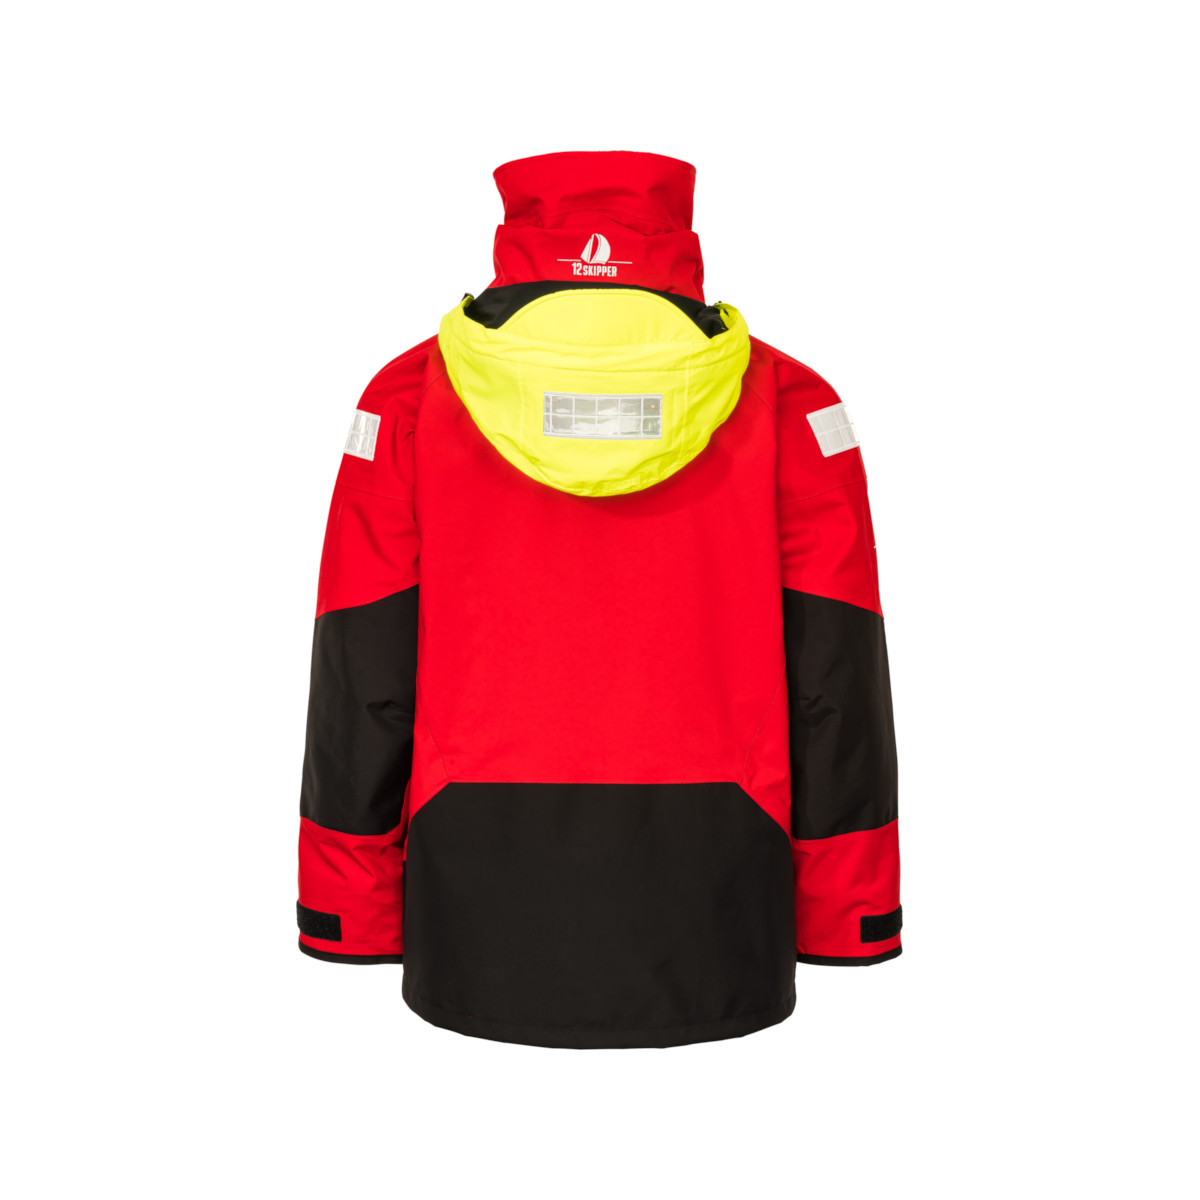 12skipper Magellan veste de quart hauturière, unisexe - rouge, taille M